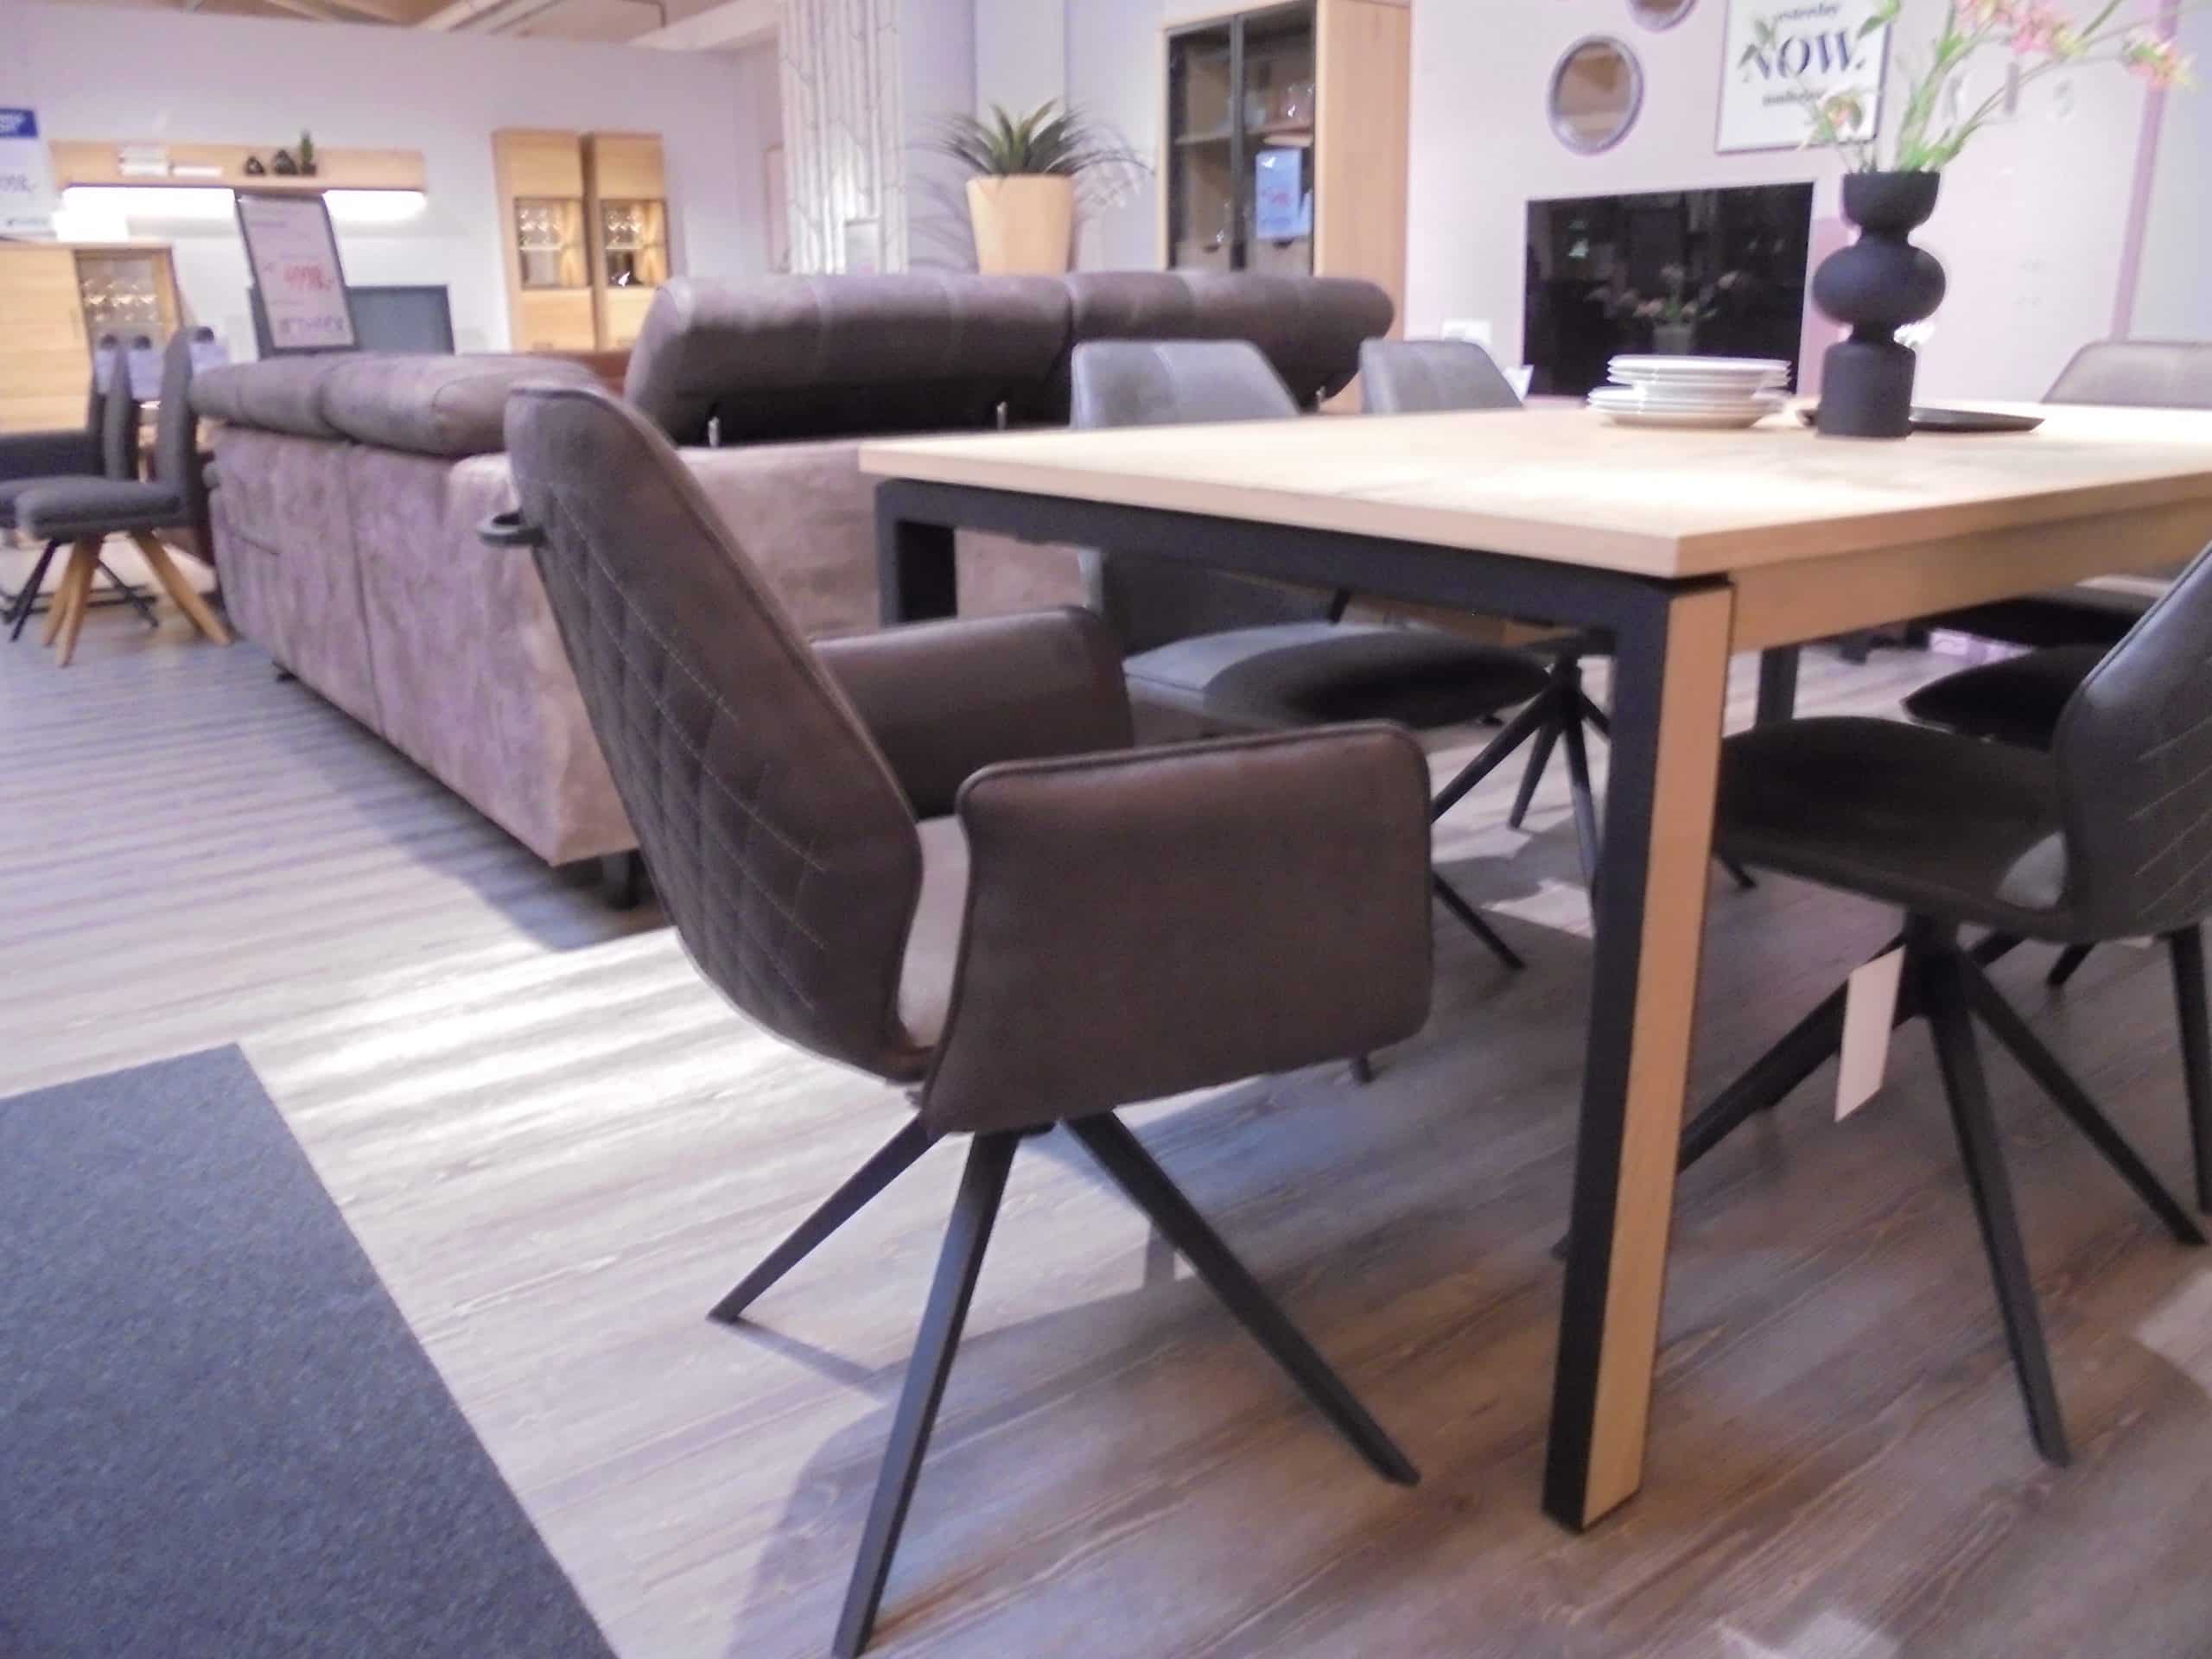 Tischgruppe Arnsberg/Bravolo mit Esstisch 100 x 190/250 cm in Eiche furniert und 6 Stühlen bei Möbelhaus Thiex im Abverkauf über 30 % reduziert.